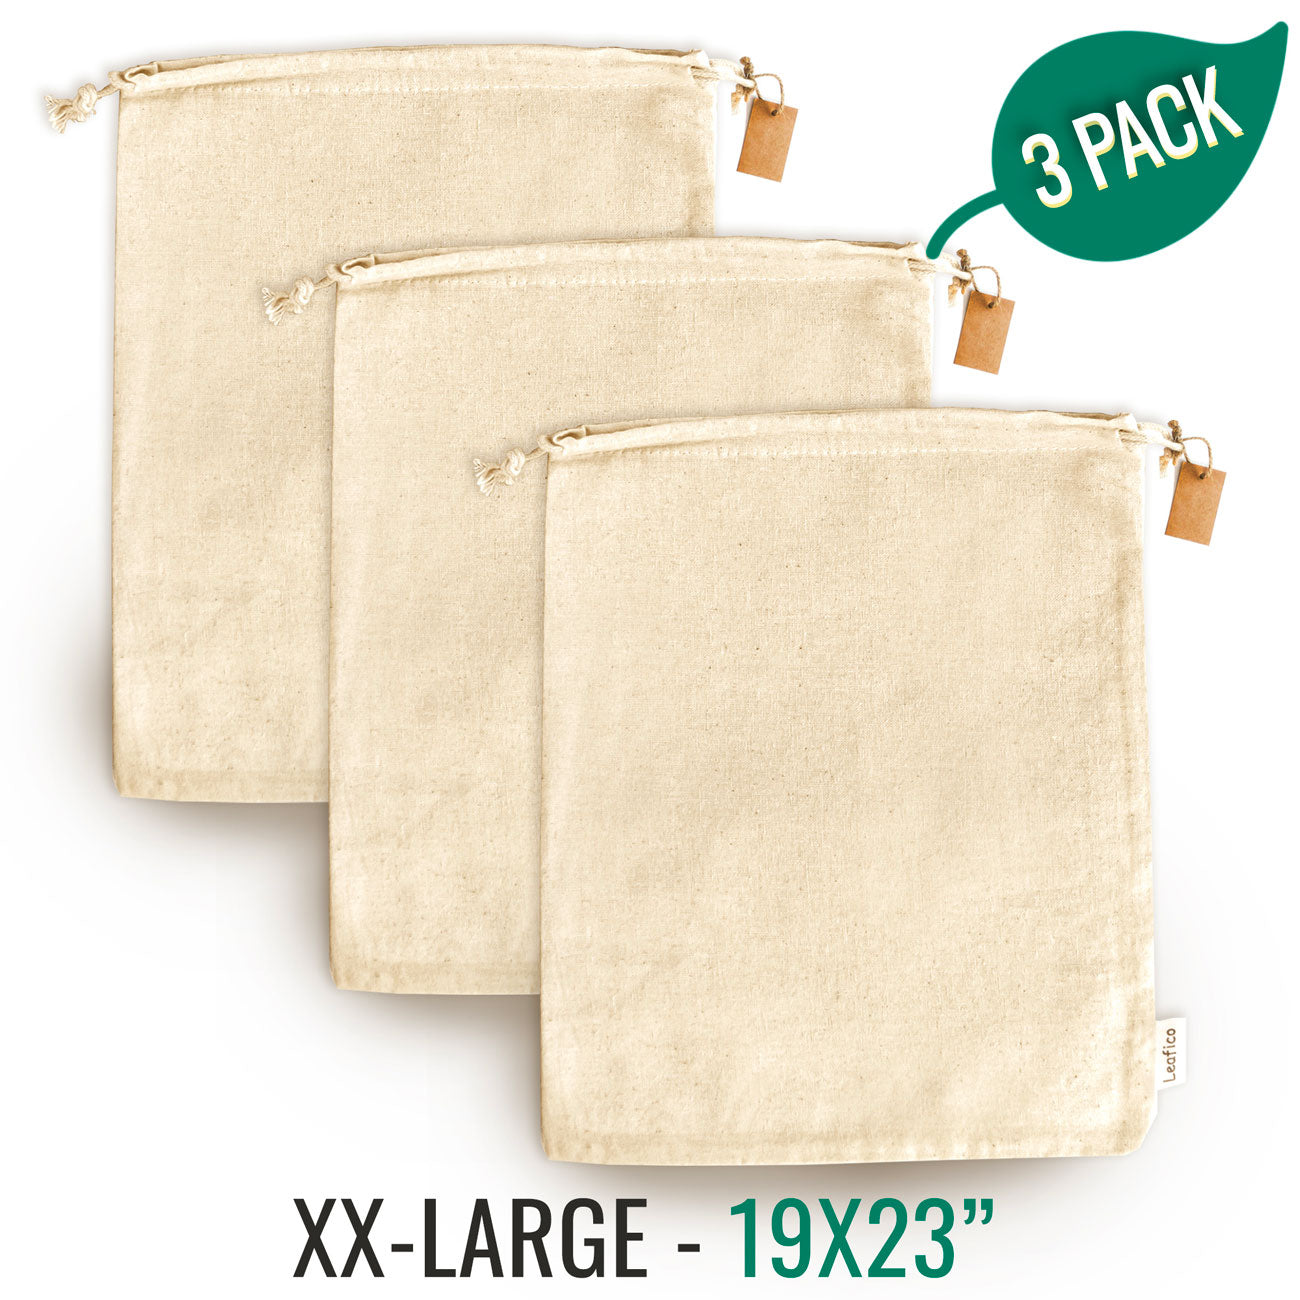 Multipurpose Reusable Cotton Bags XX-Large 19x23"